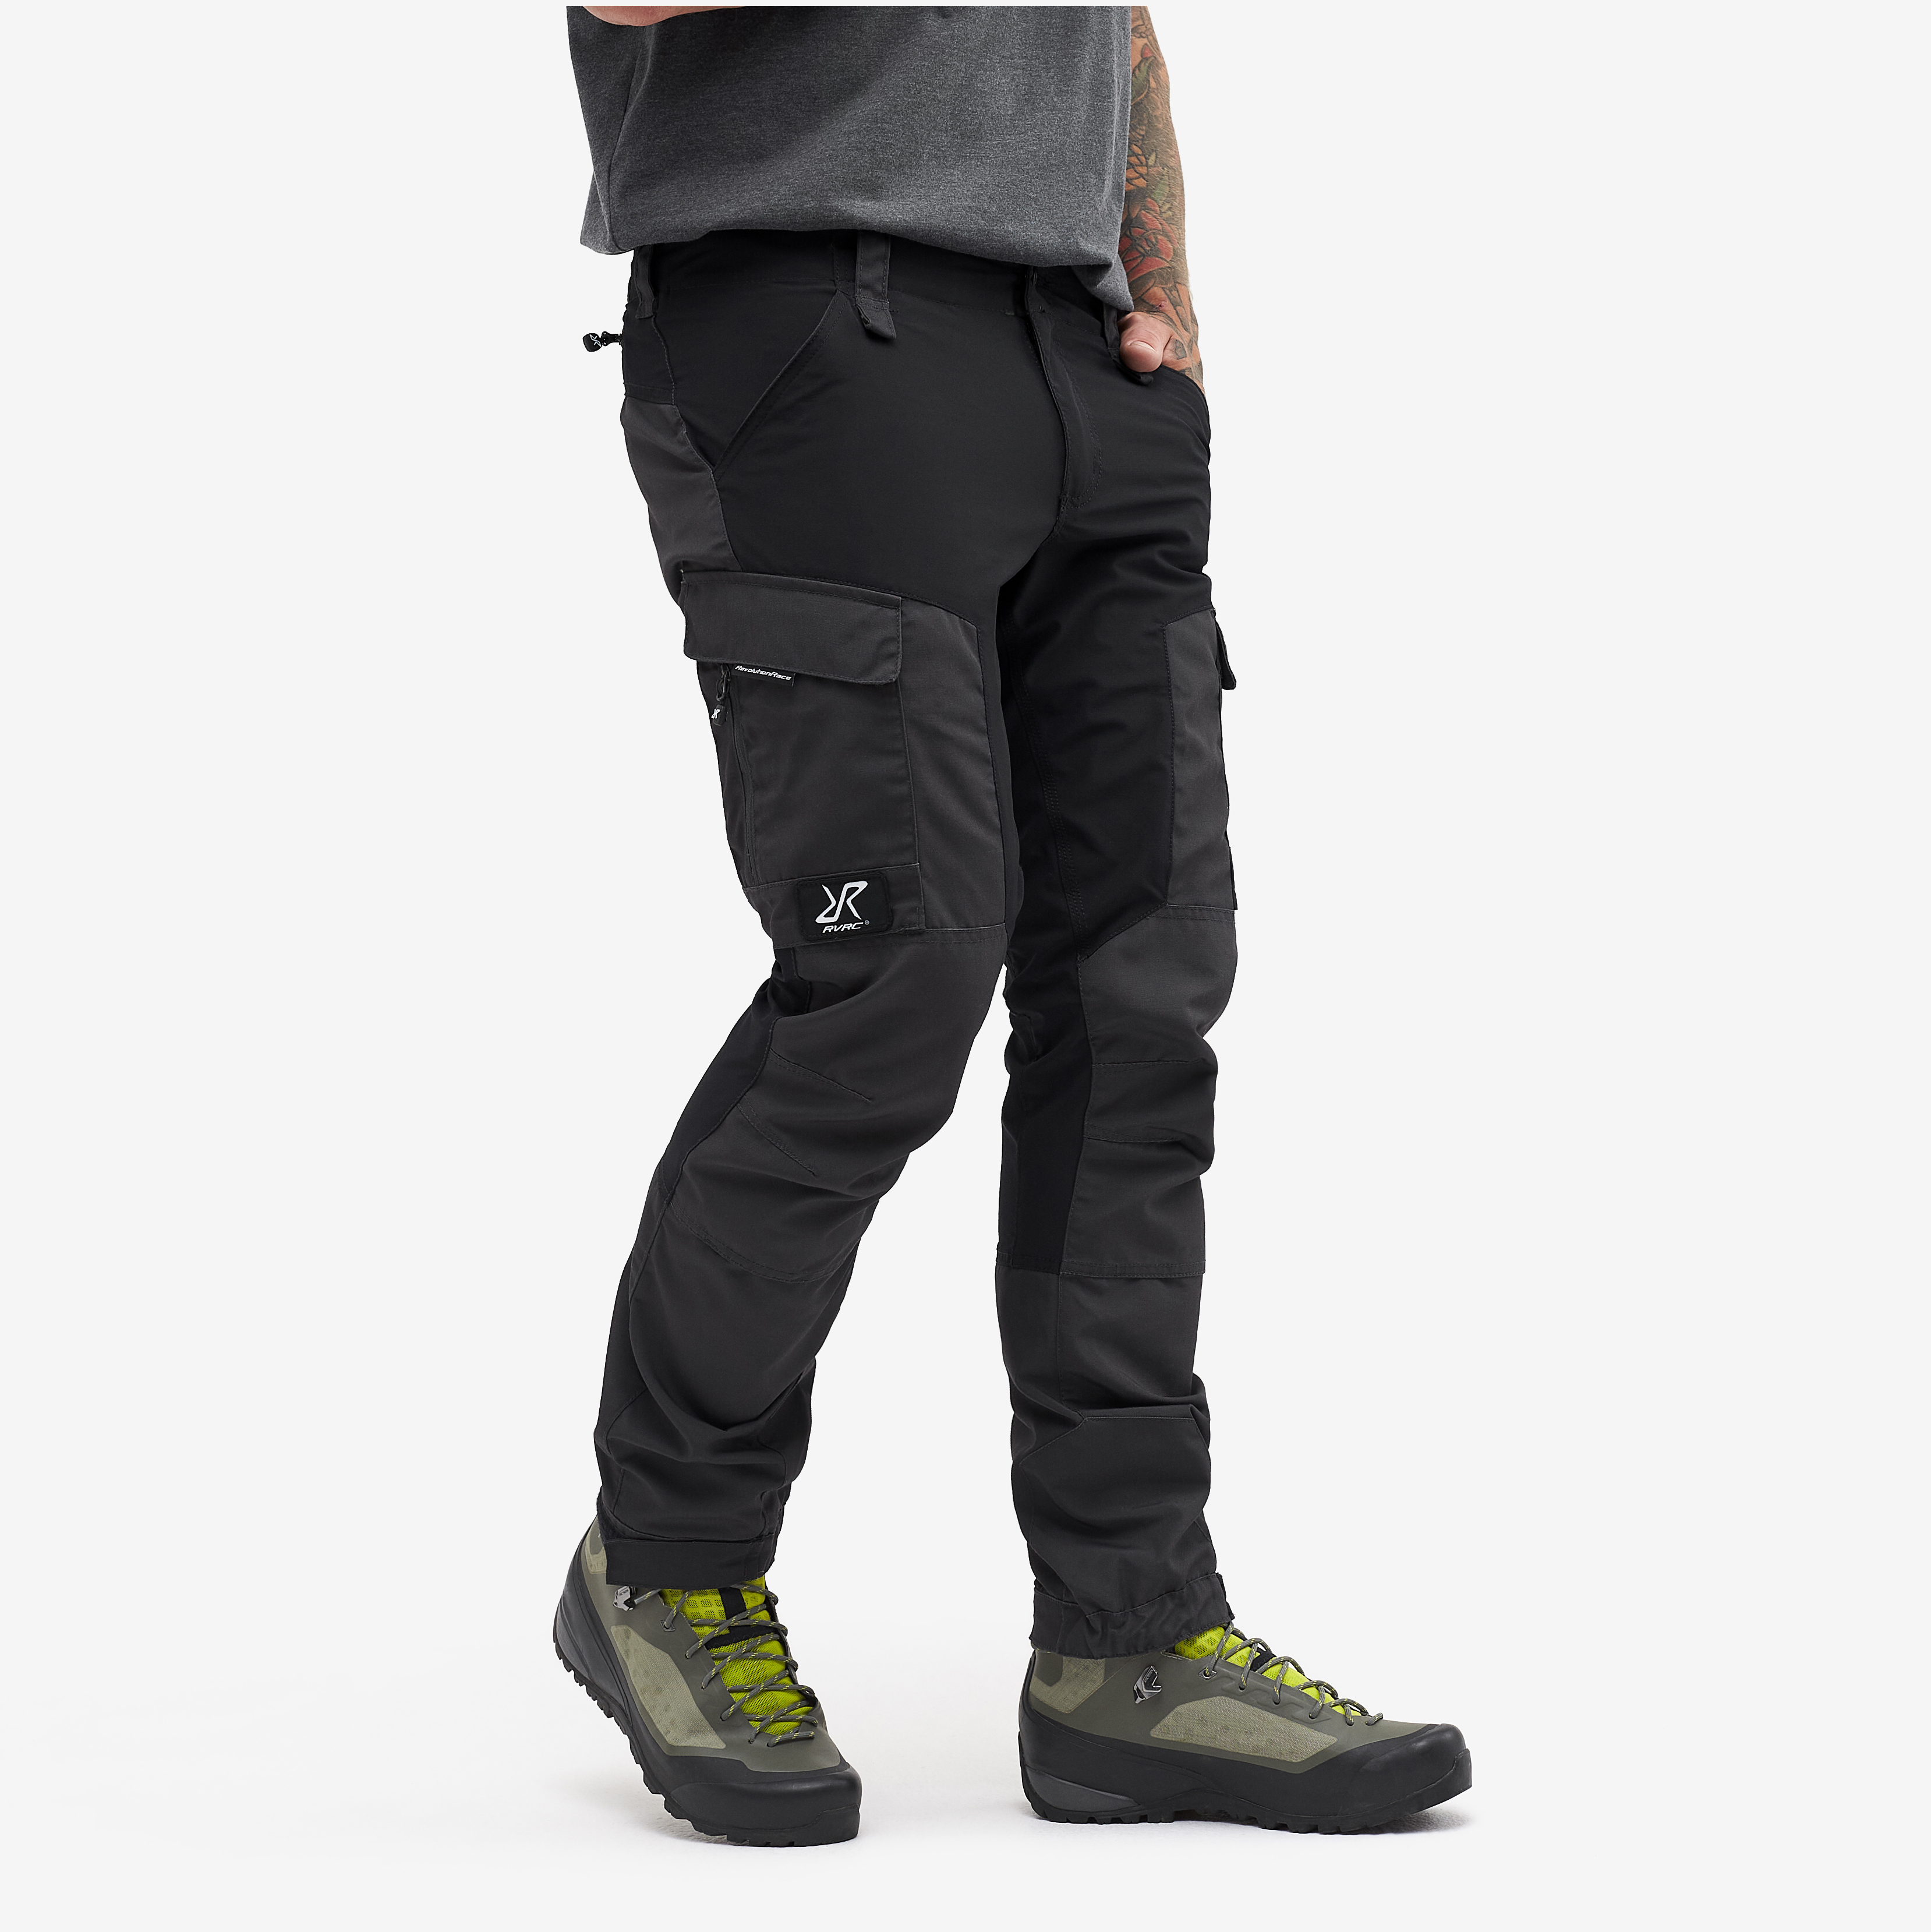 RVRC GP Short outdoor pants for men in black